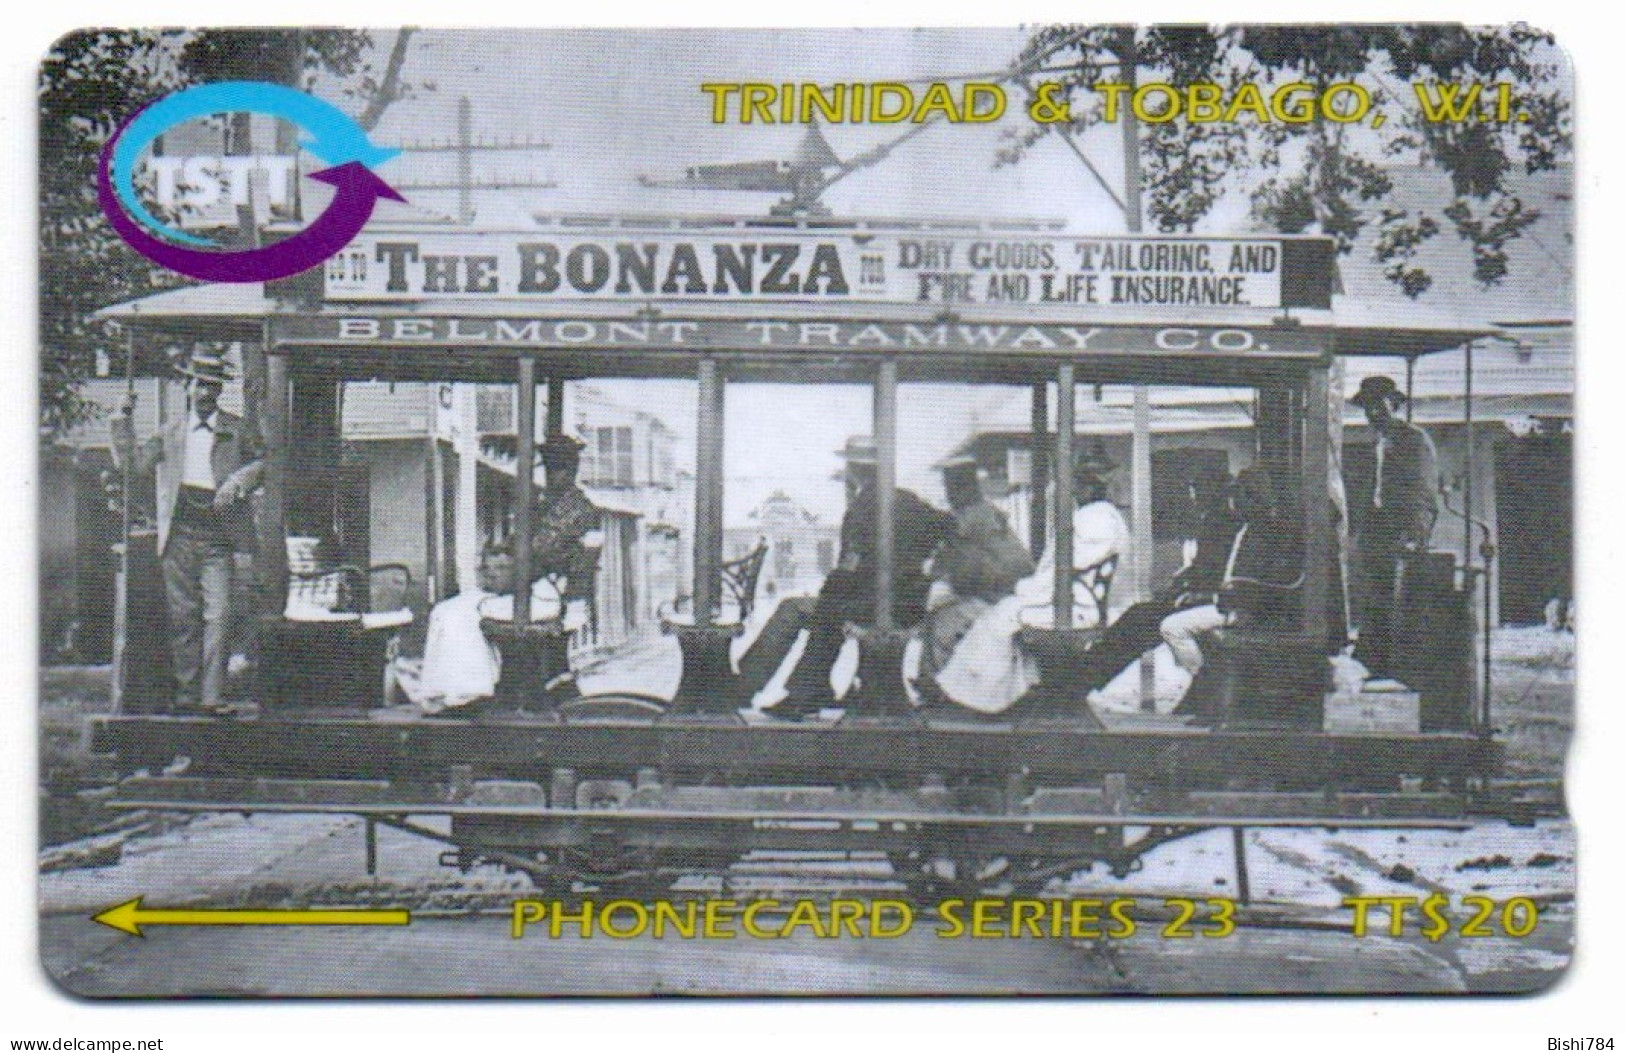 Trinidad & Tobago - The Belmont Tramway - DUMMY - Trinidad & Tobago